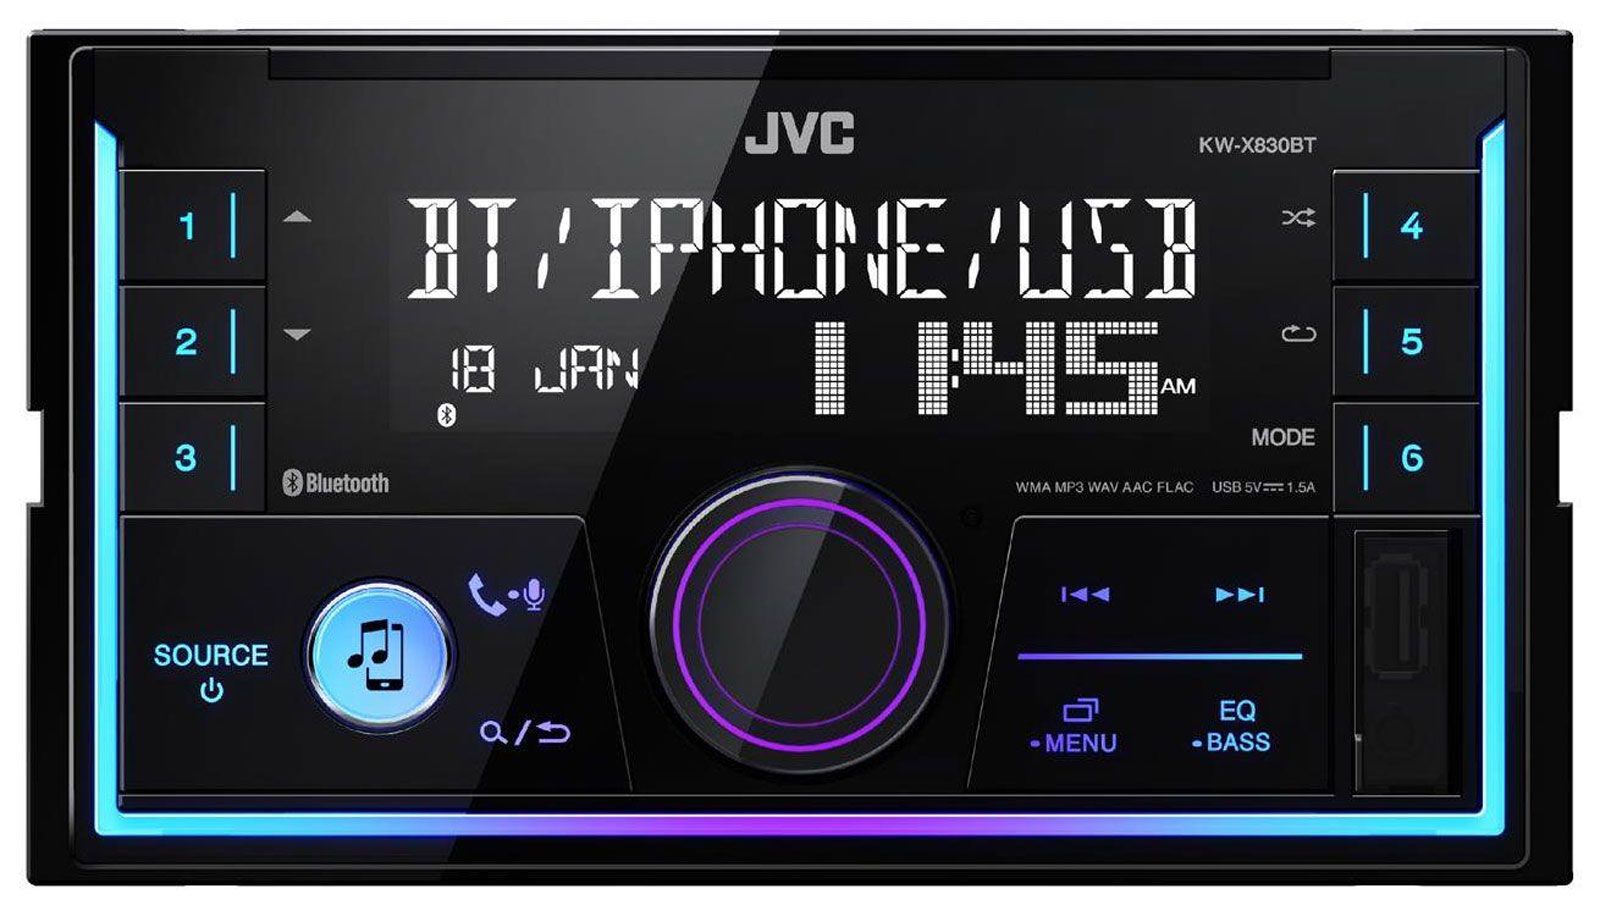 JVC KW-X830BT - Doppel-DIN MP3-Autoradio mit Bluetooth / USB / iPod / AUX-IN